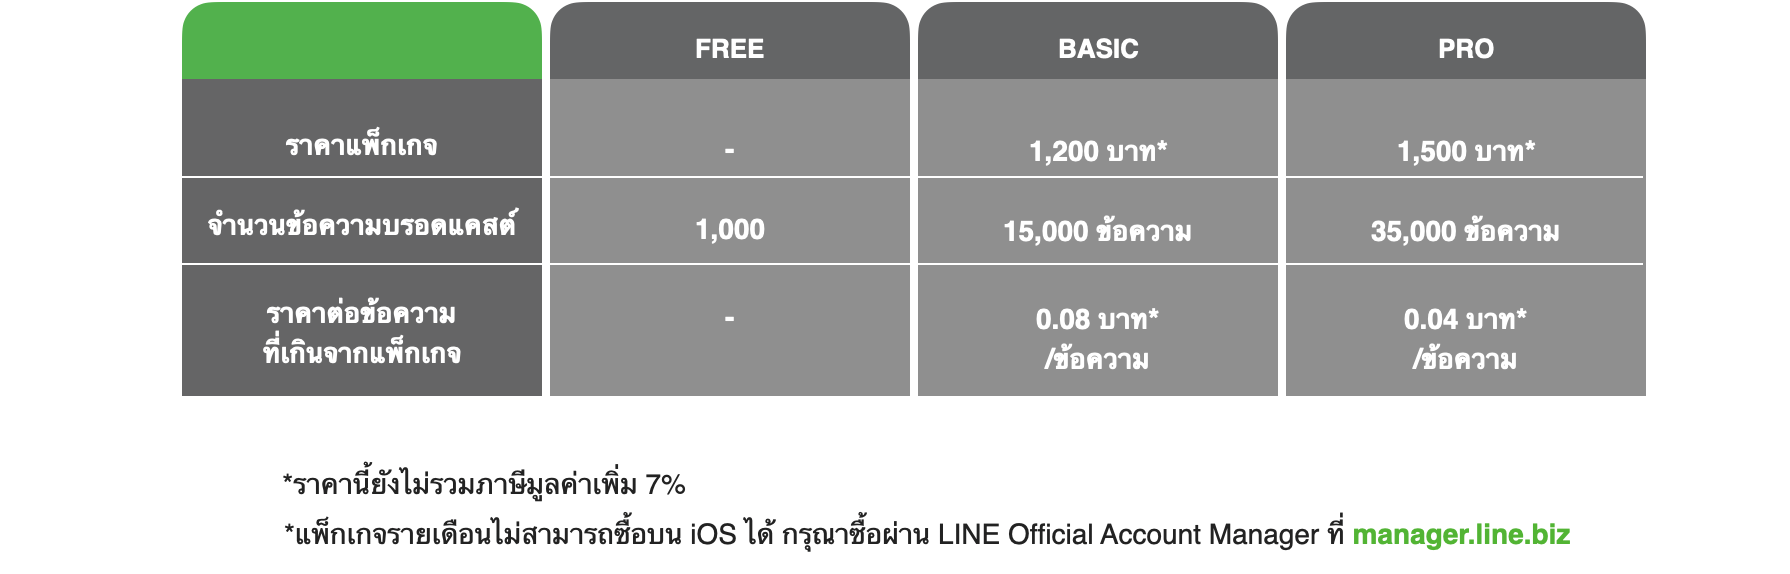 แพ็คเกจบรอดแคสต์ Line Oa (Line Official Account Broadcast Package)